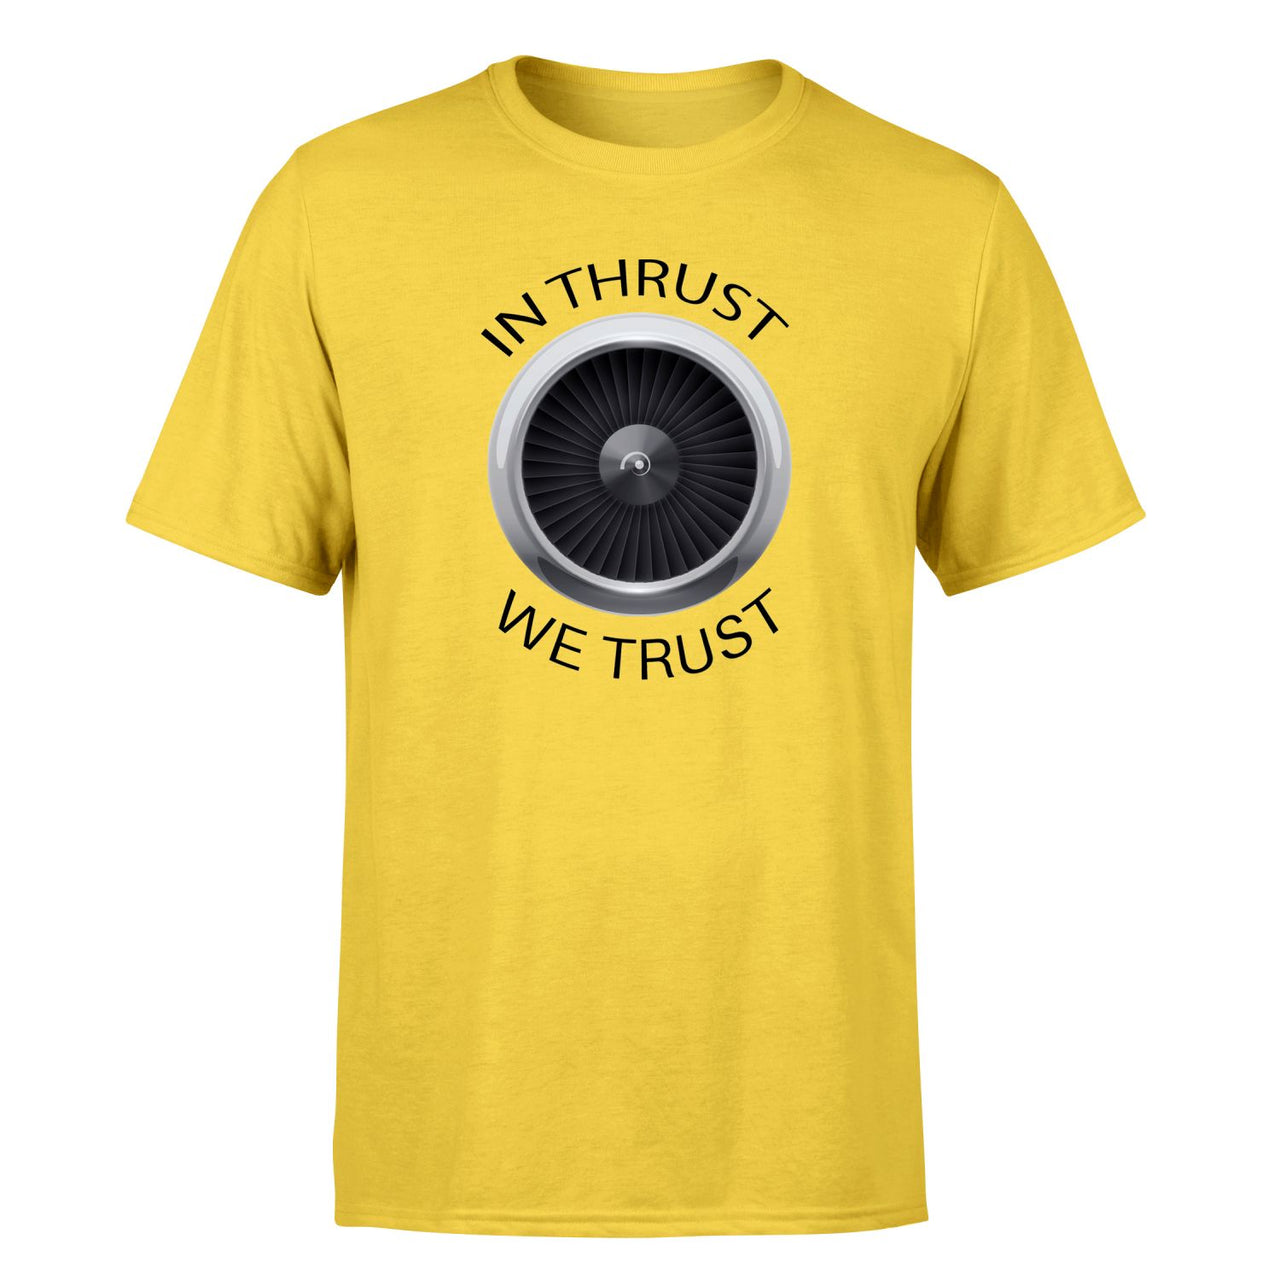 In Thrust We Trust Designed T-Shirts